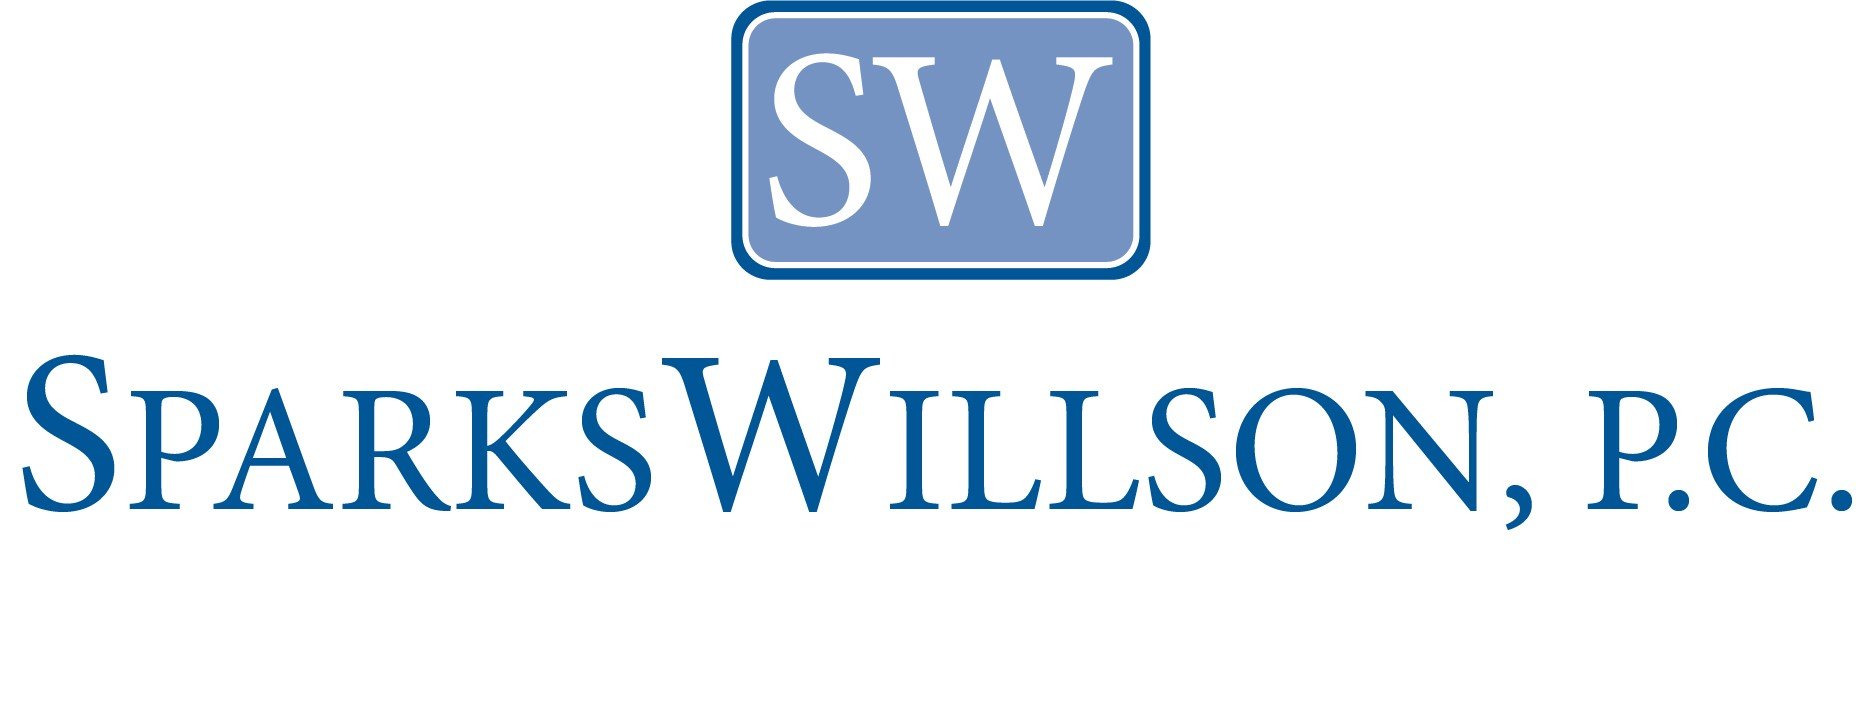 Sparks Willson PC - logo.jpg